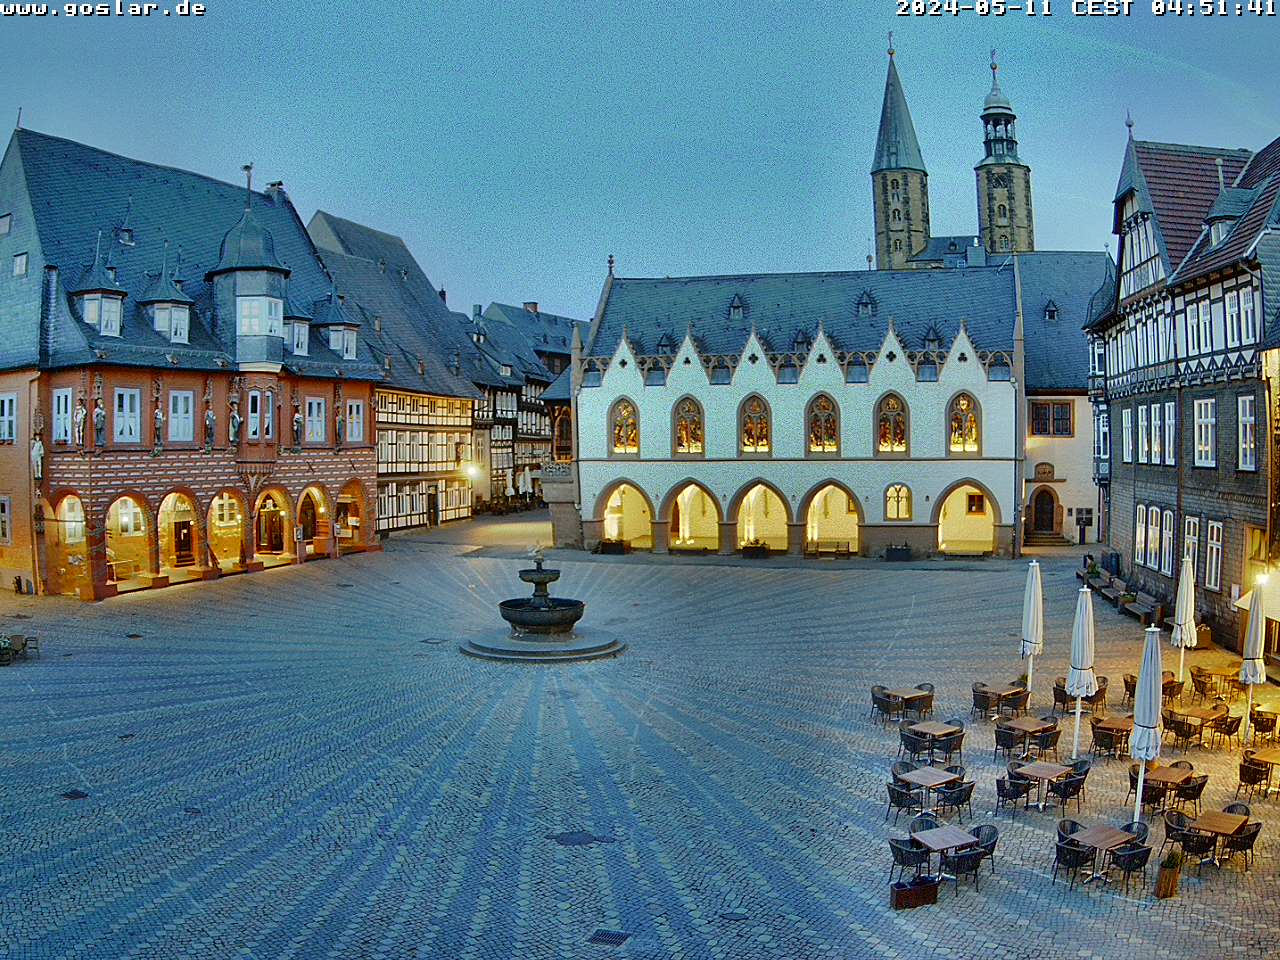 Goslar Mer. 04:51